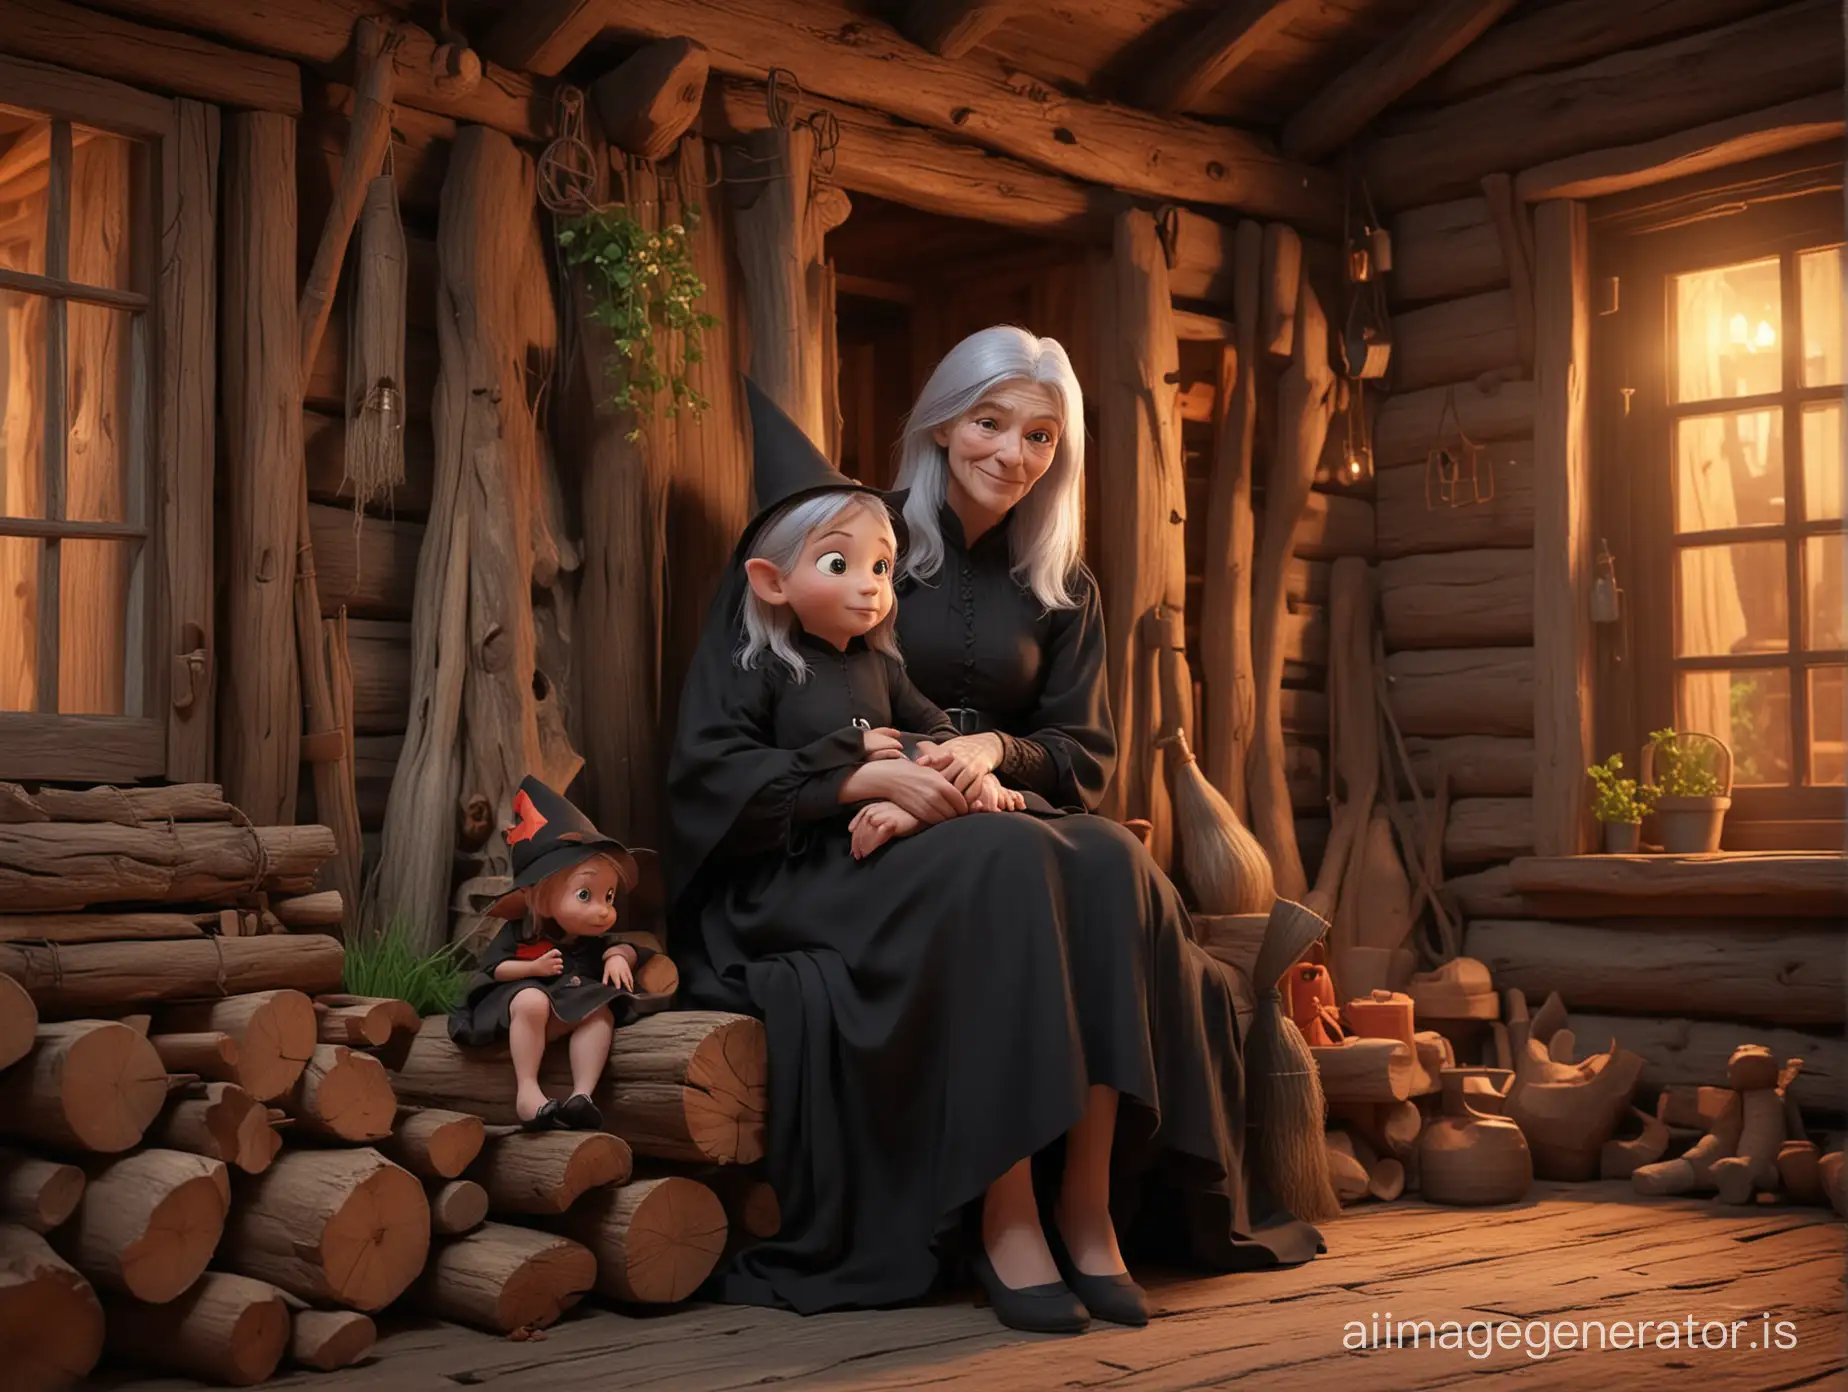 Enchanting-Grandma-and-Granddaughter-in-Nighttime-Log-Cabin